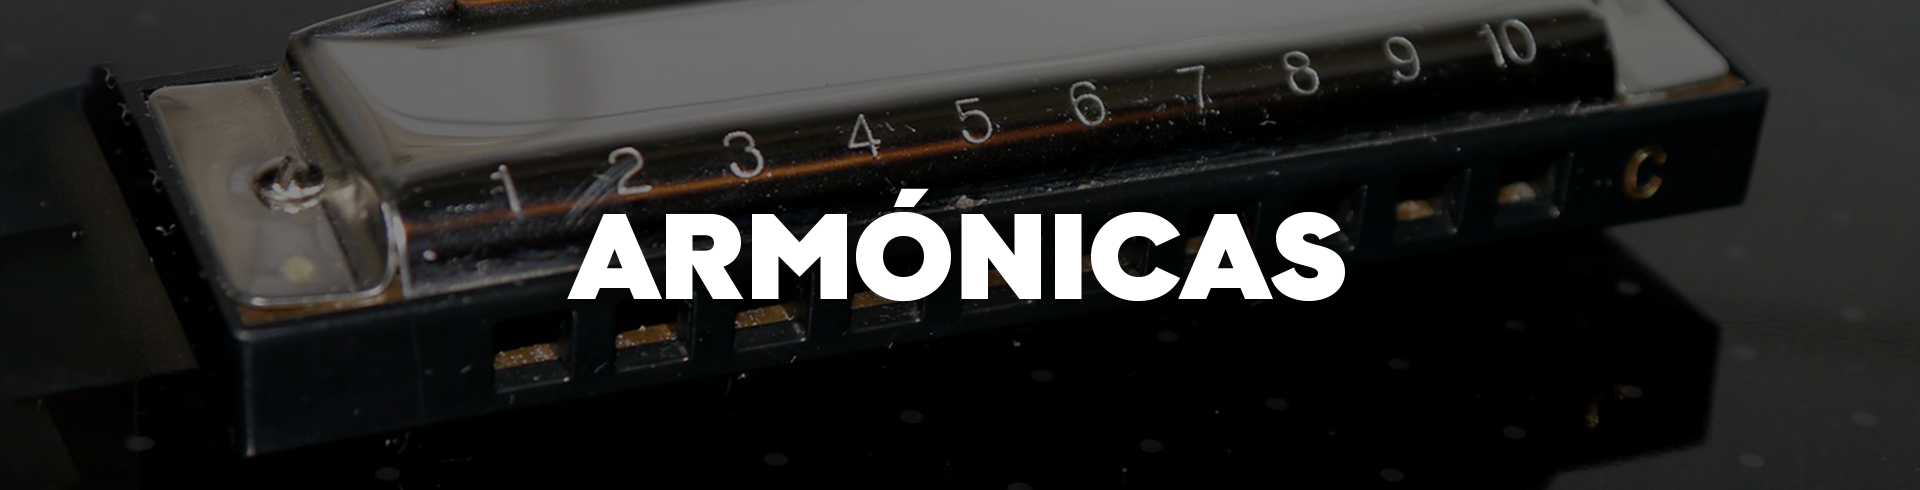 armonica harmonica instrumento viento paruno